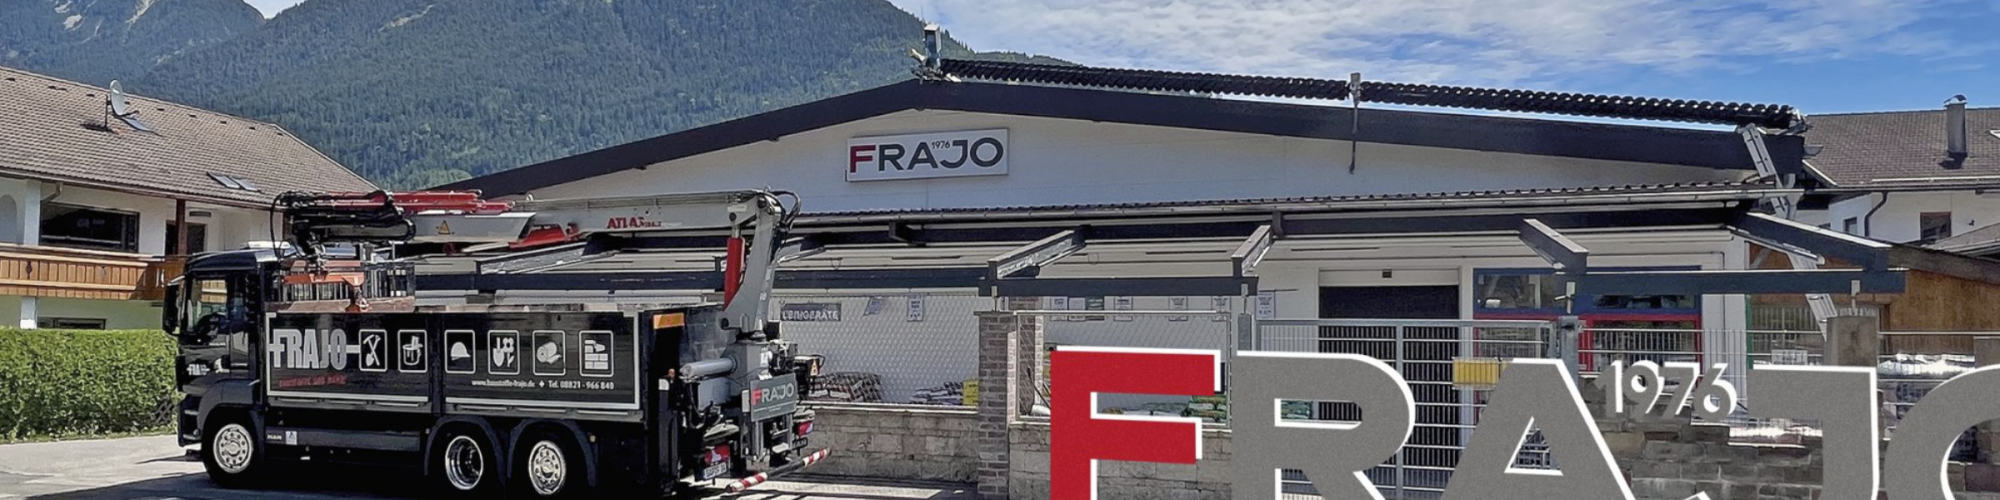 Baustoffe Frajo GmbH